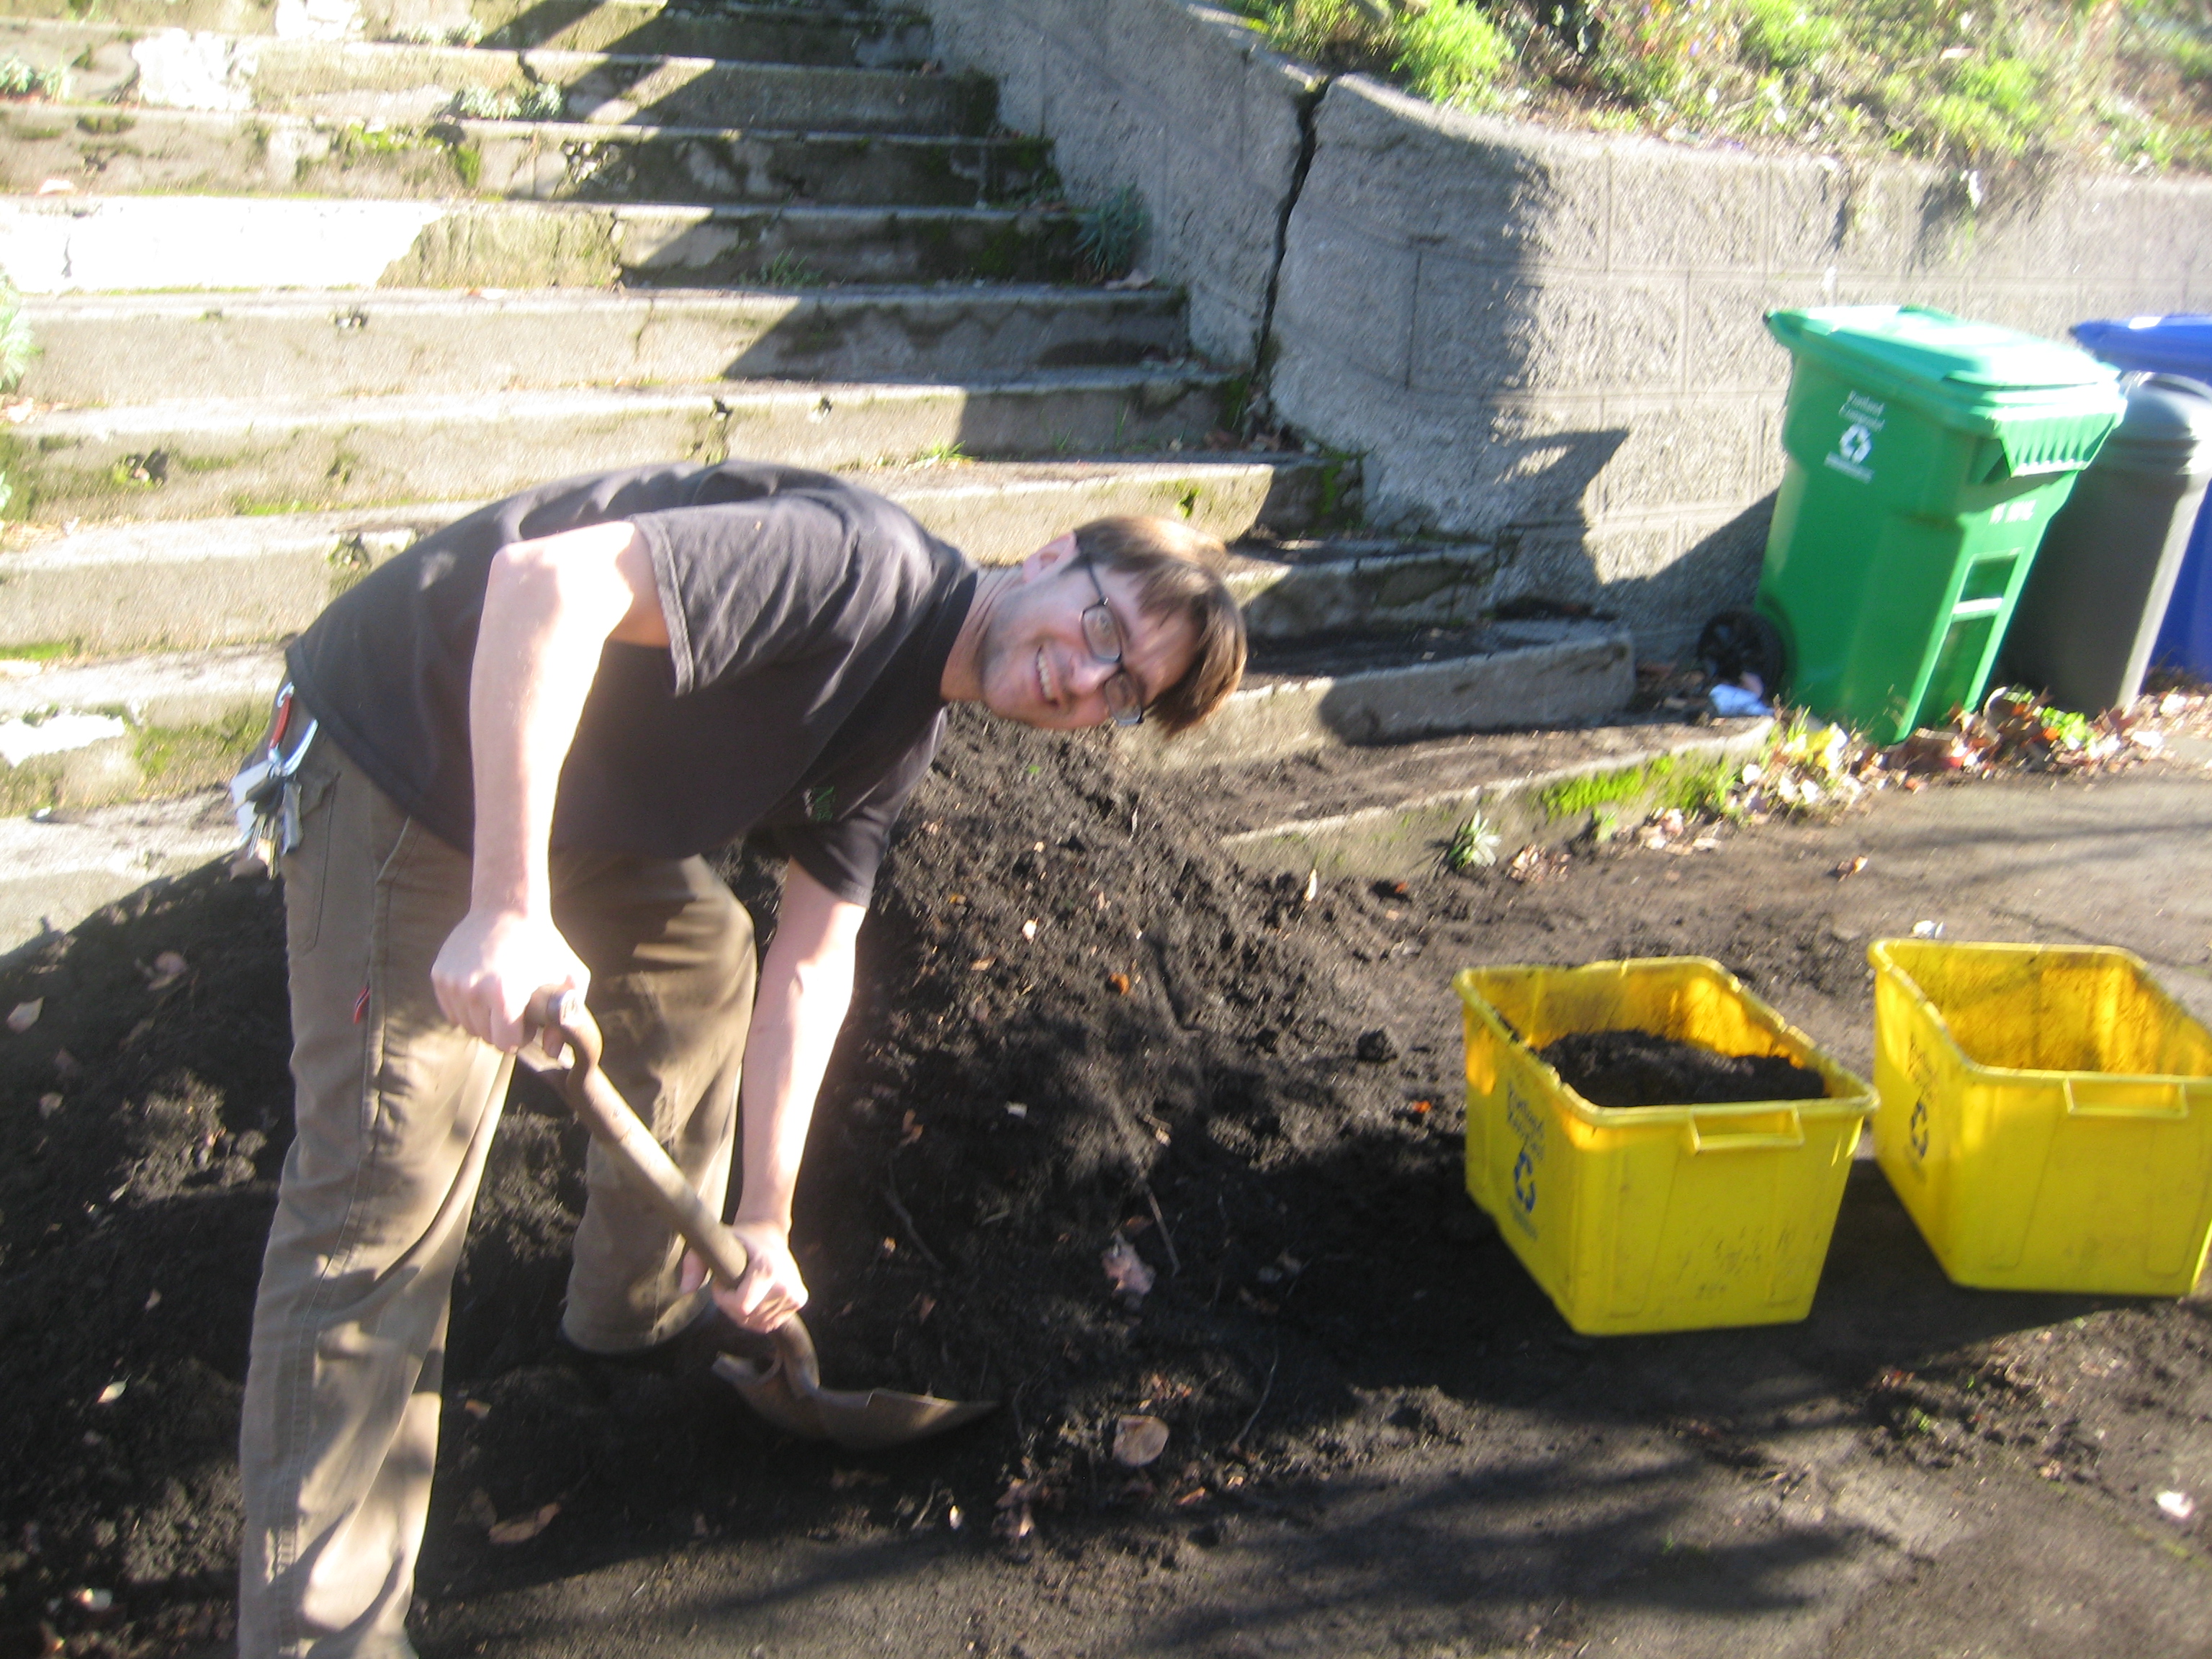 Man-shoveling-compost-Flickr